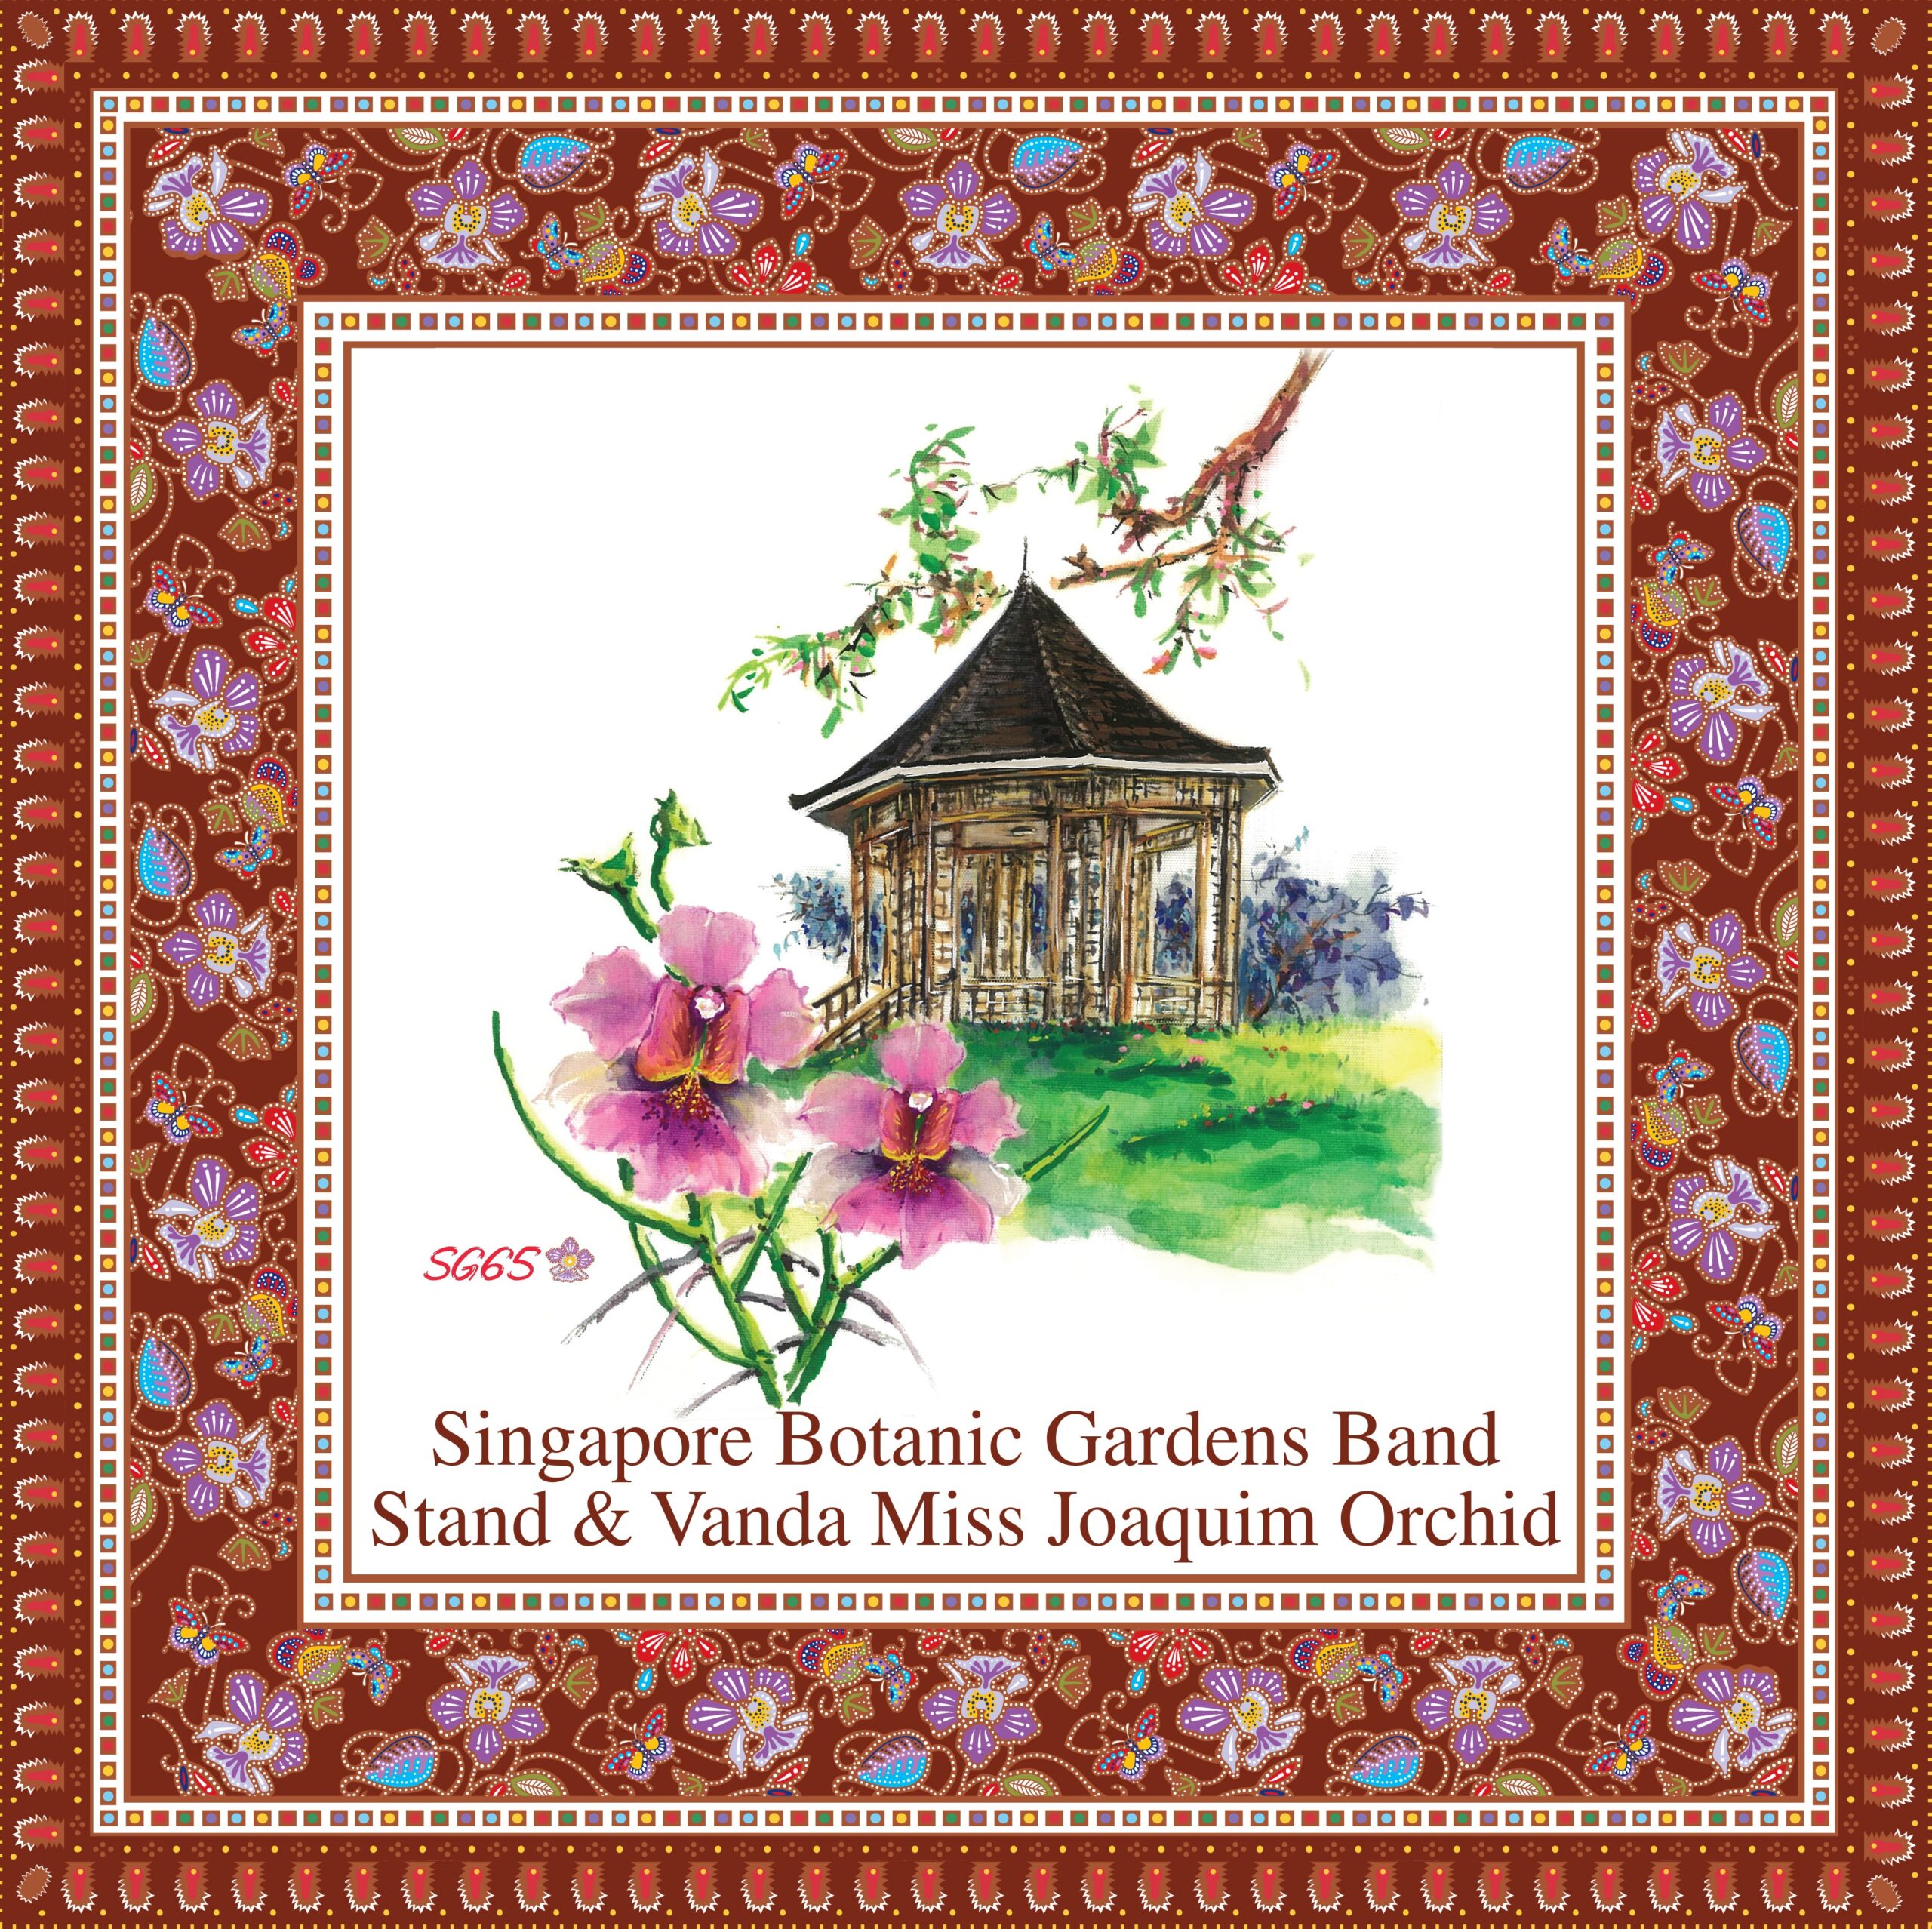 Singapore Botanic Gardens Band Stand & Vanda Miss Joaquim Orchid